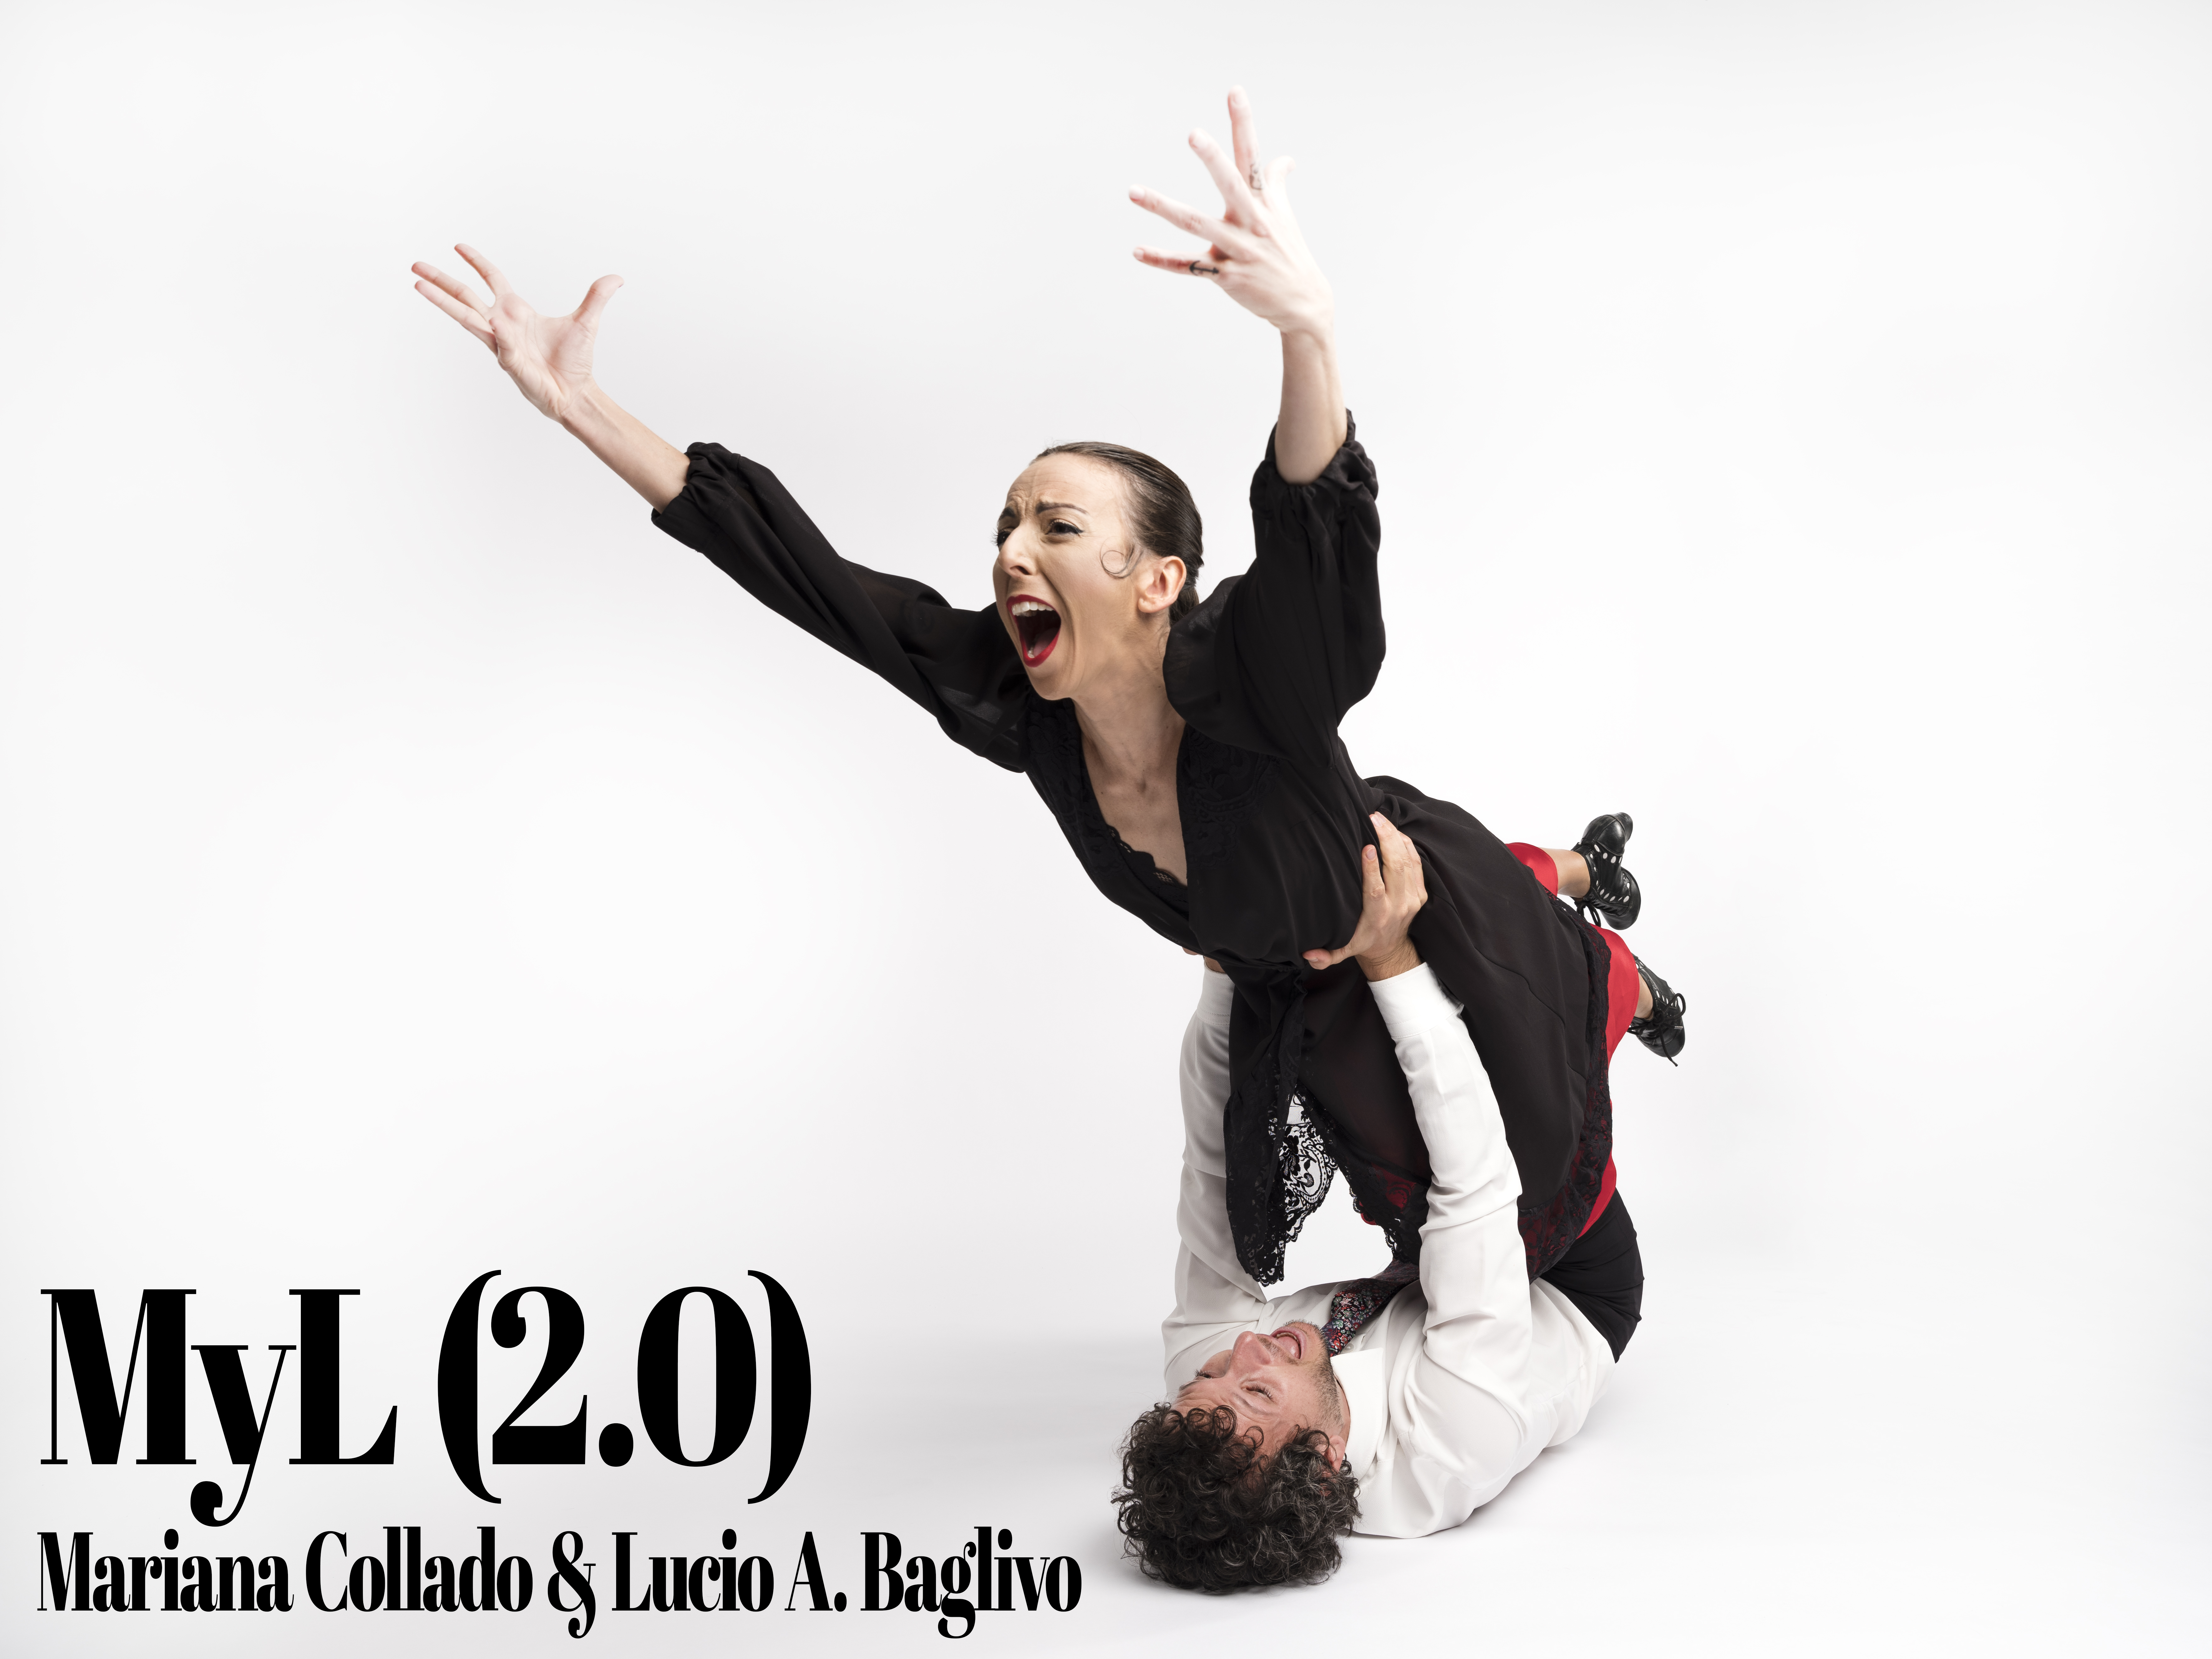 imagen de la compañía - Mariana Collado y Lucio Baglivo